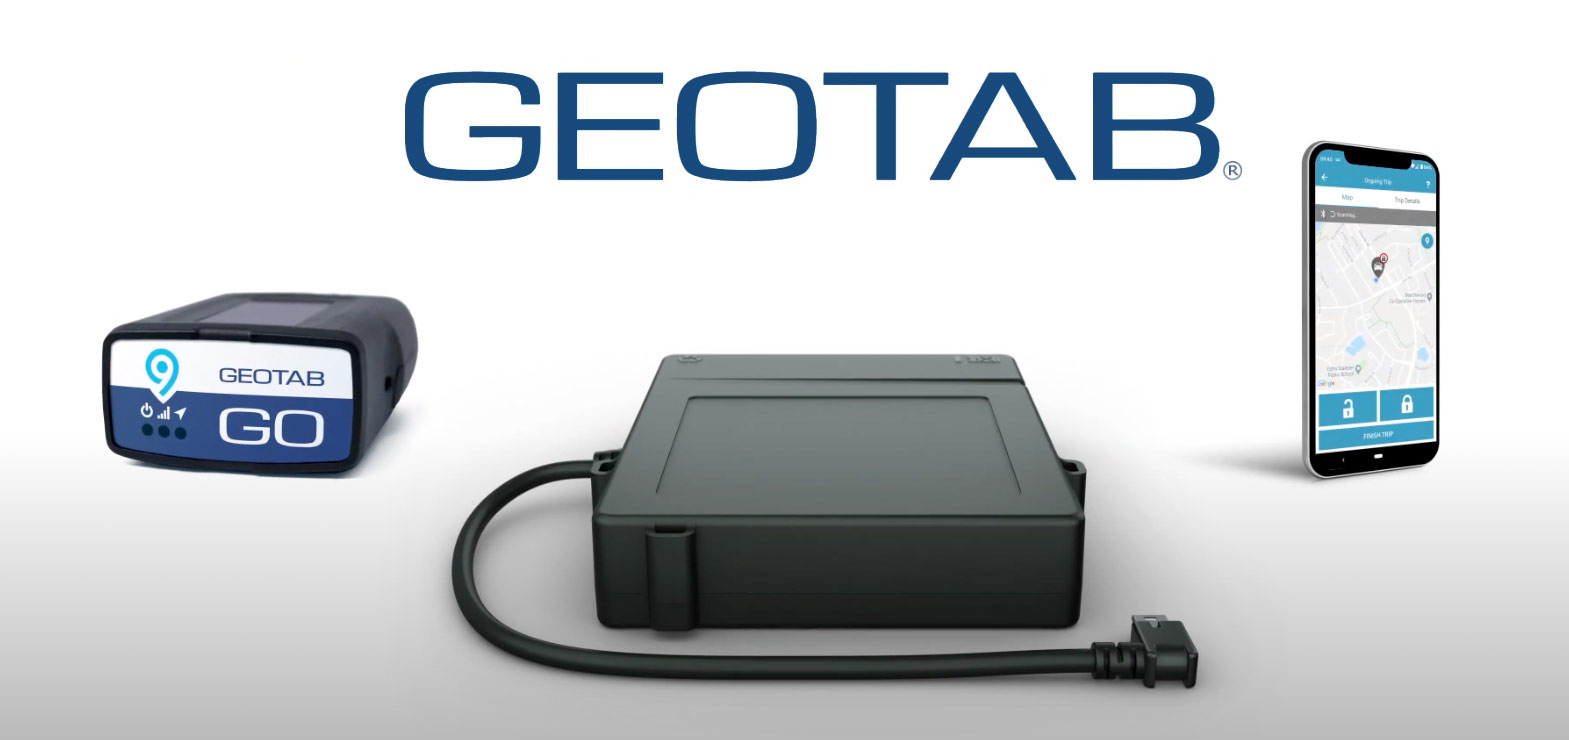 GEotab Keyless Hardware Ausstattung
